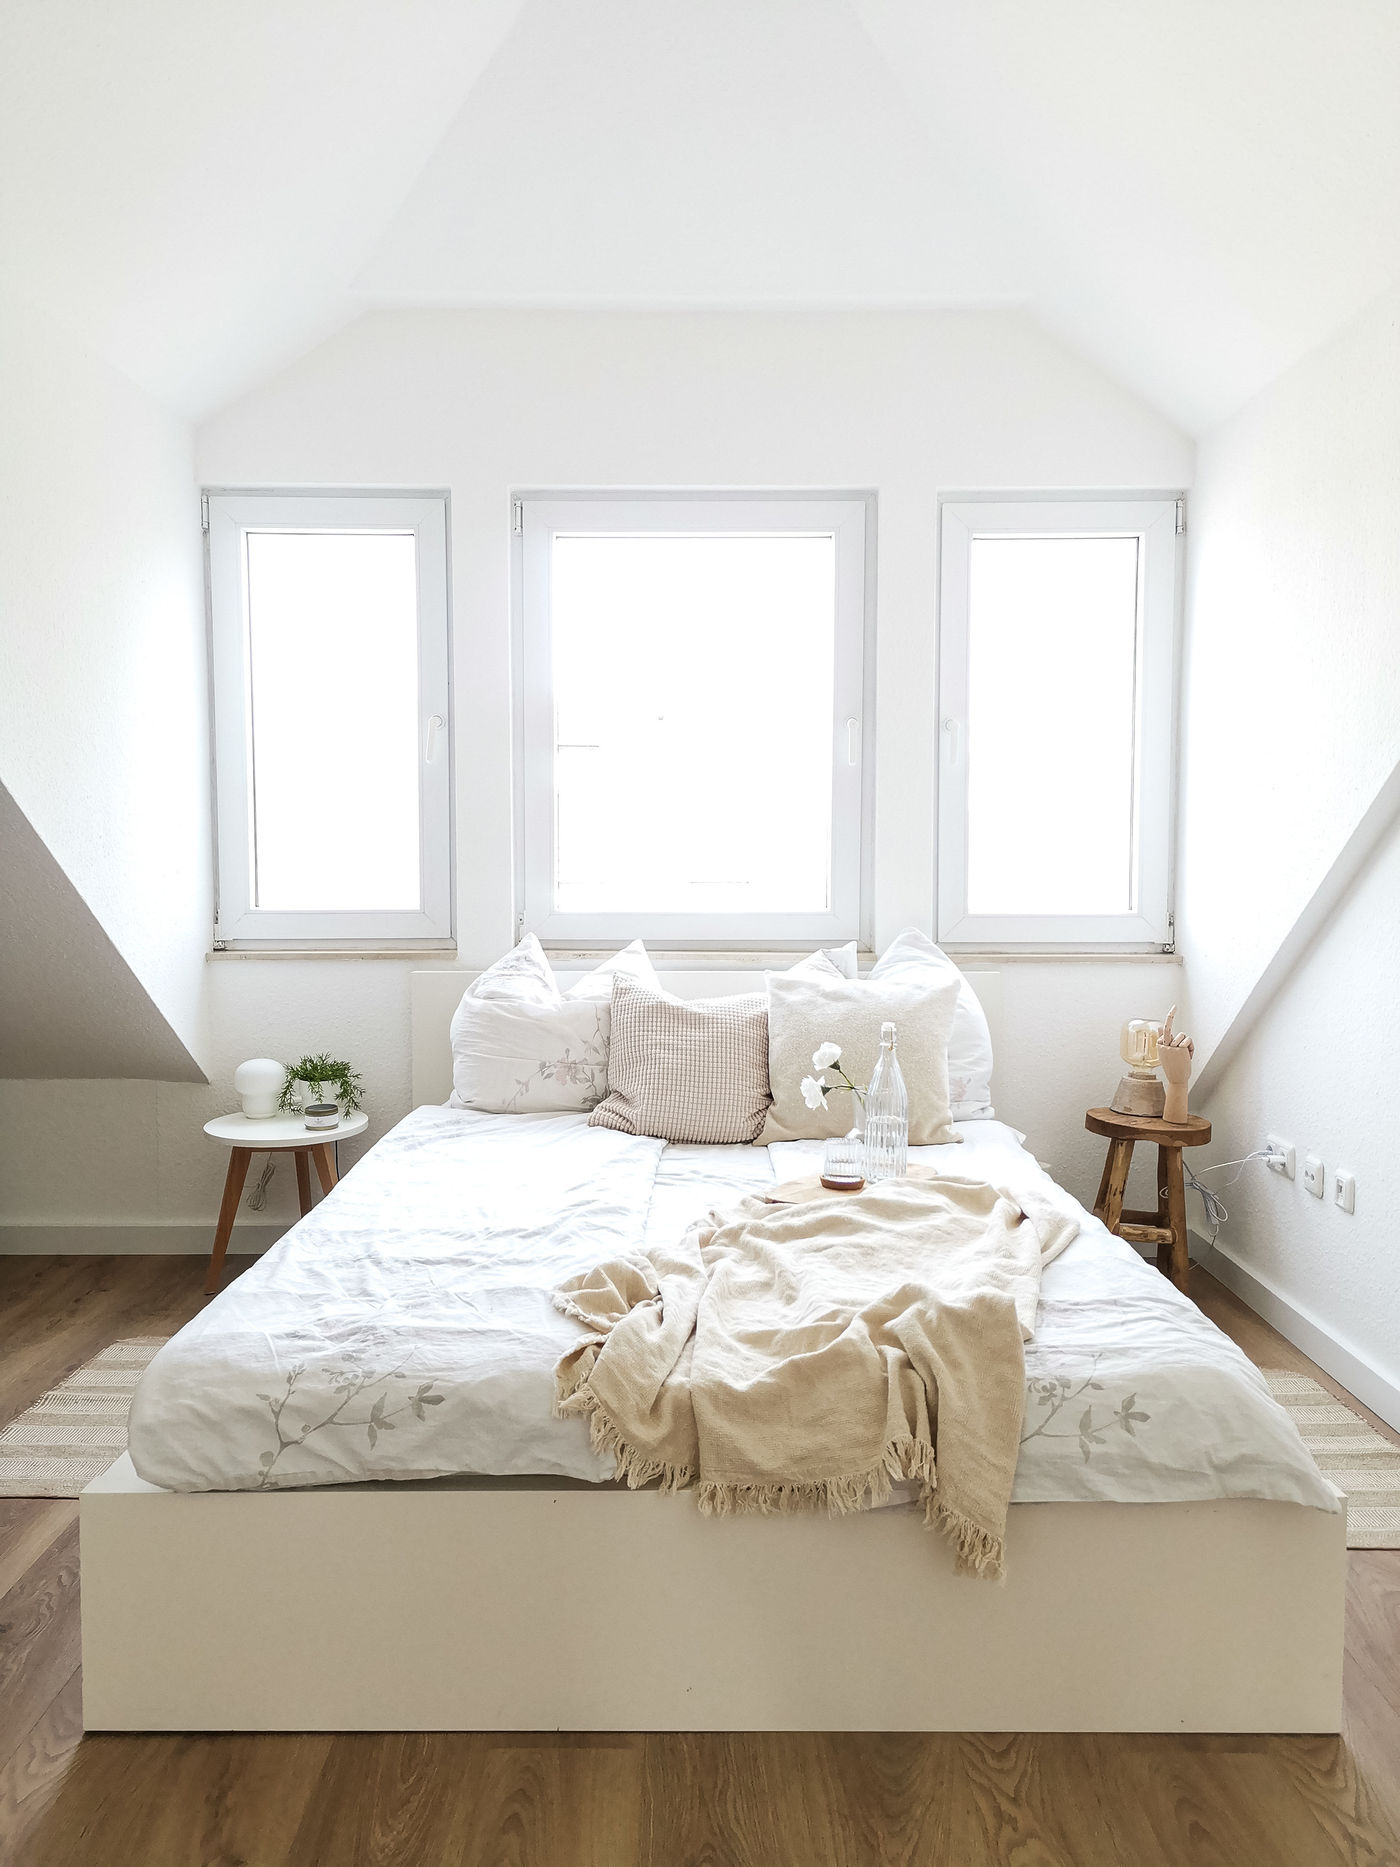 die schönsten ideen für dein ikea schlafzimmer - seite 5